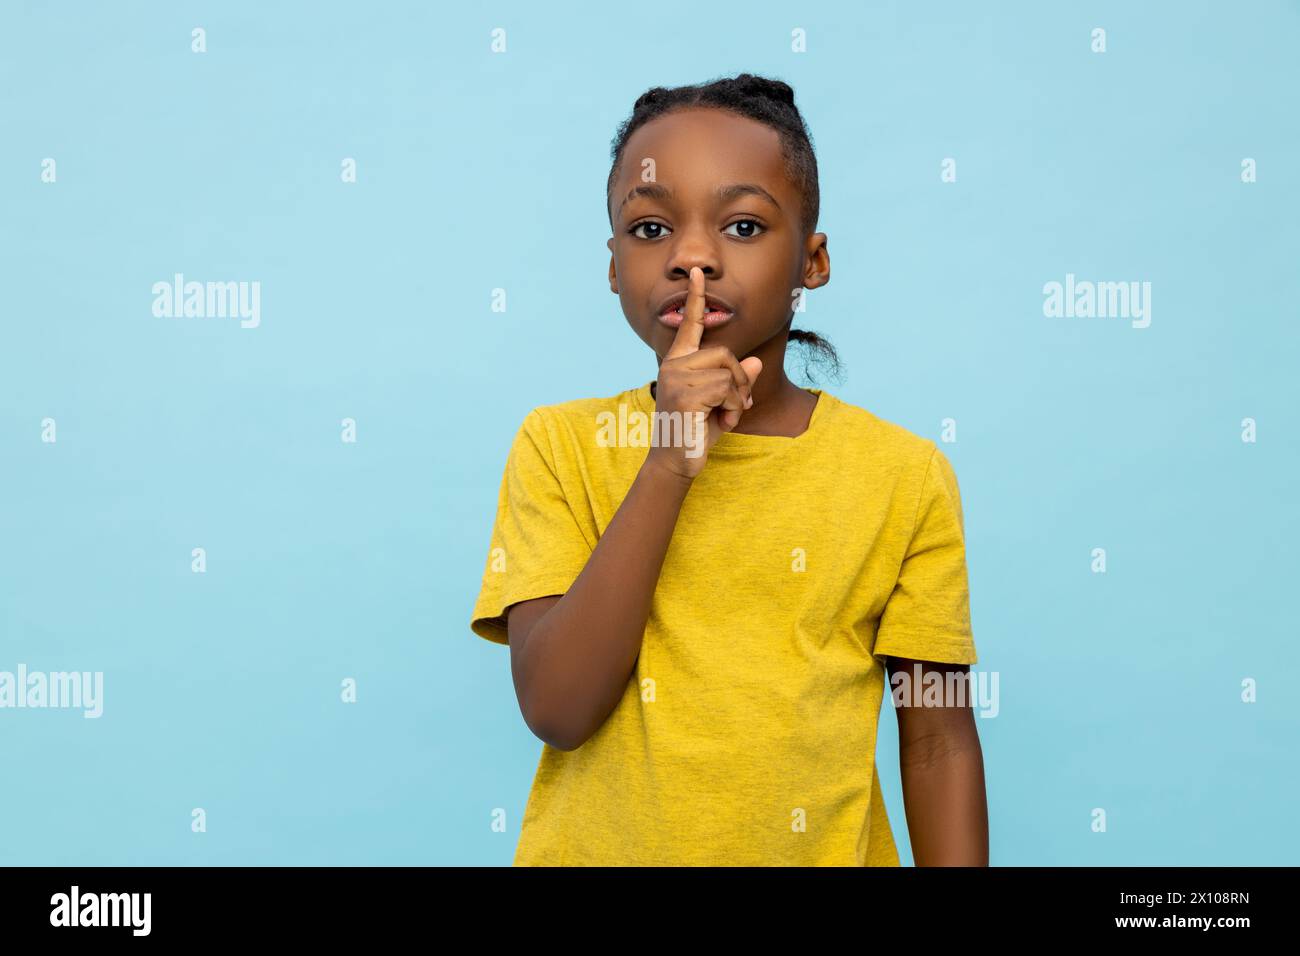 Petit garçon sérieux à la peau foncée montrant un geste de silence Banque D'Images